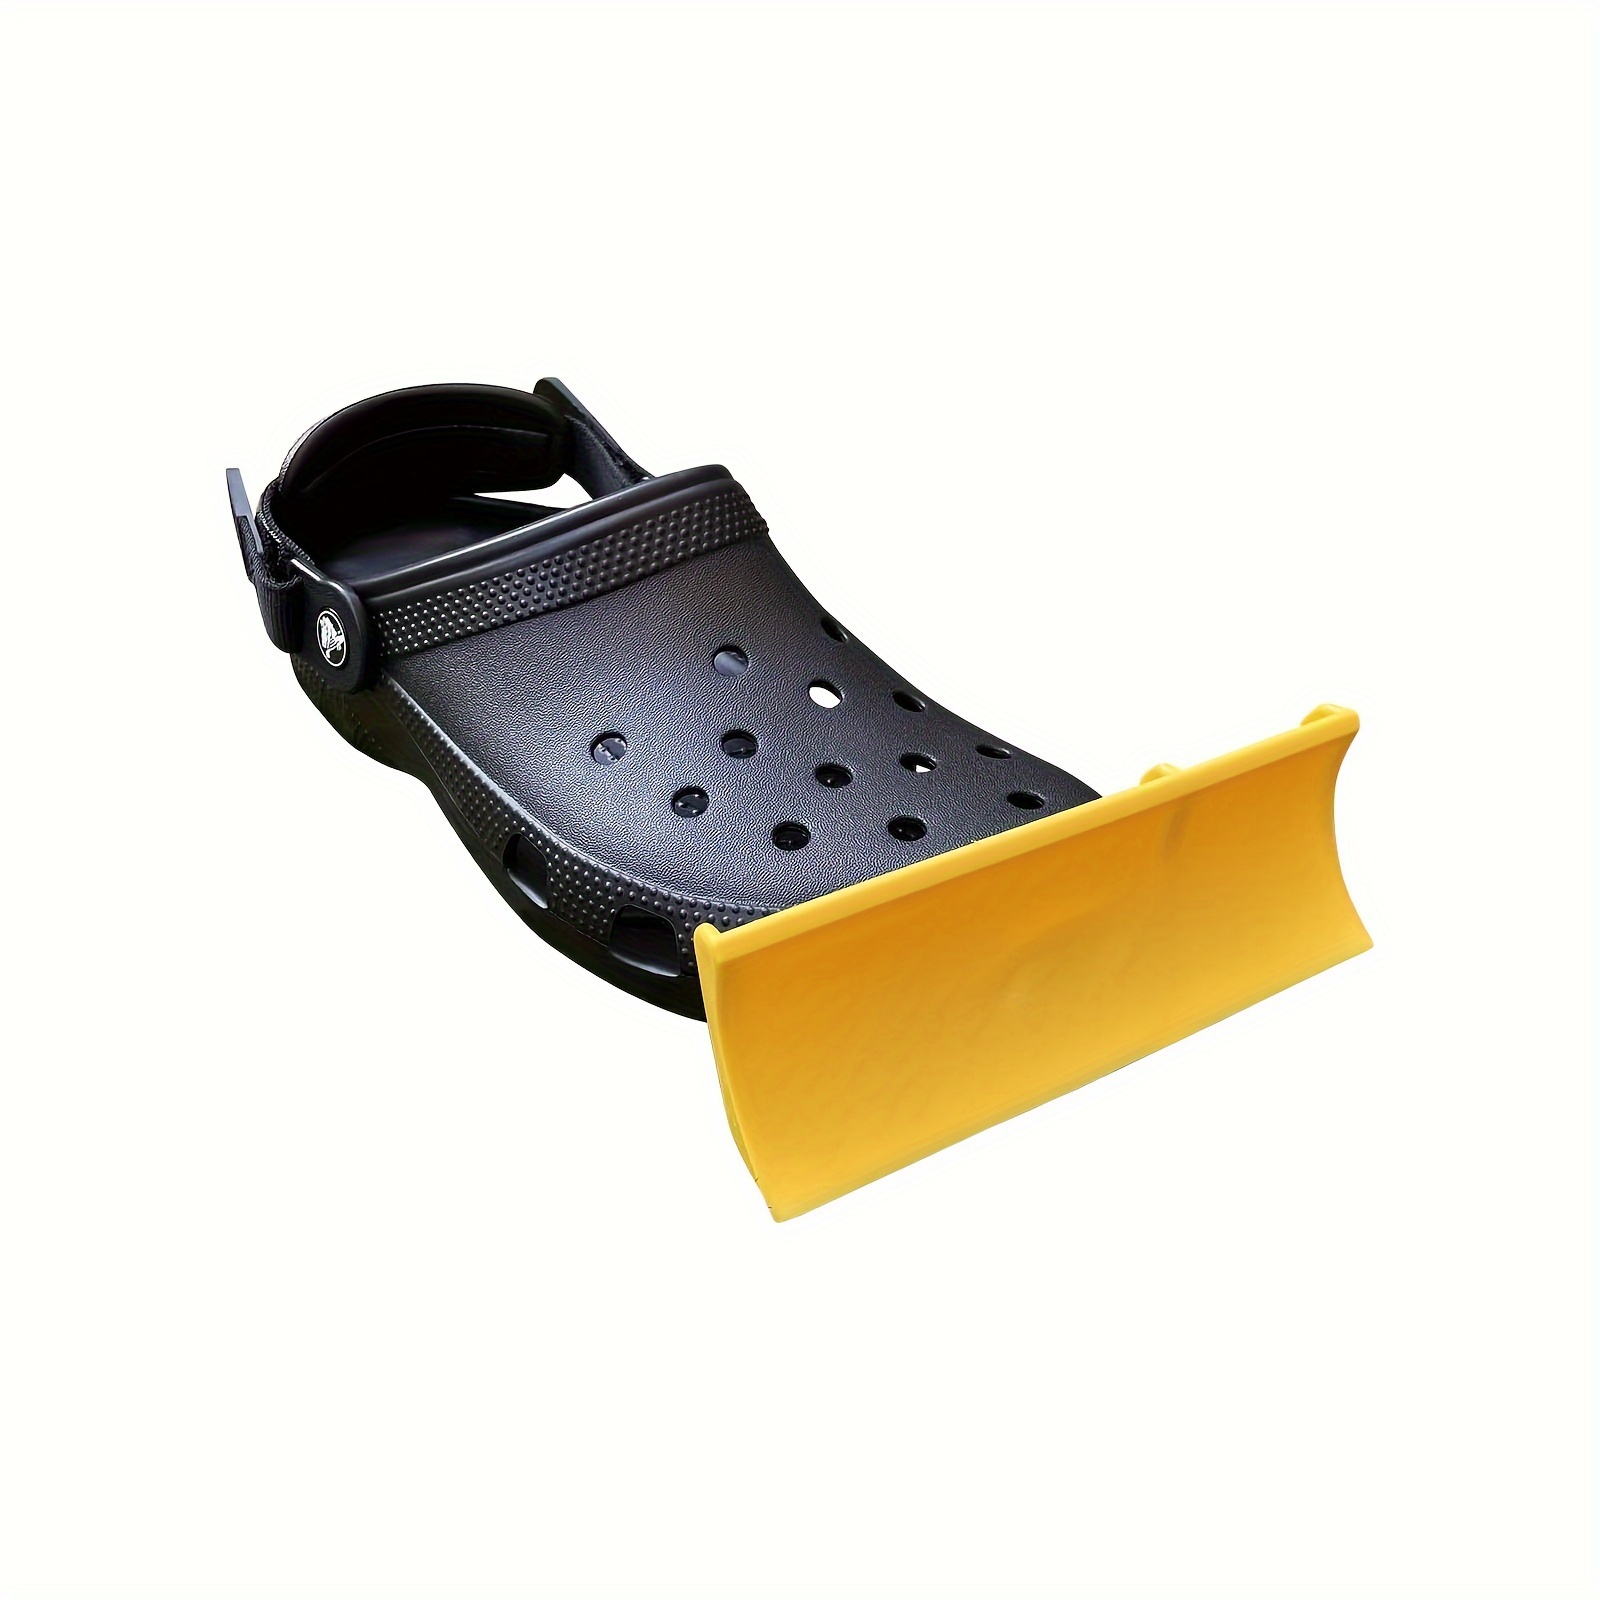 2Pcs Snow Plow Shovel Croc Charm Attachment Crocs Jibbitz Shoes Decoration  Gifts